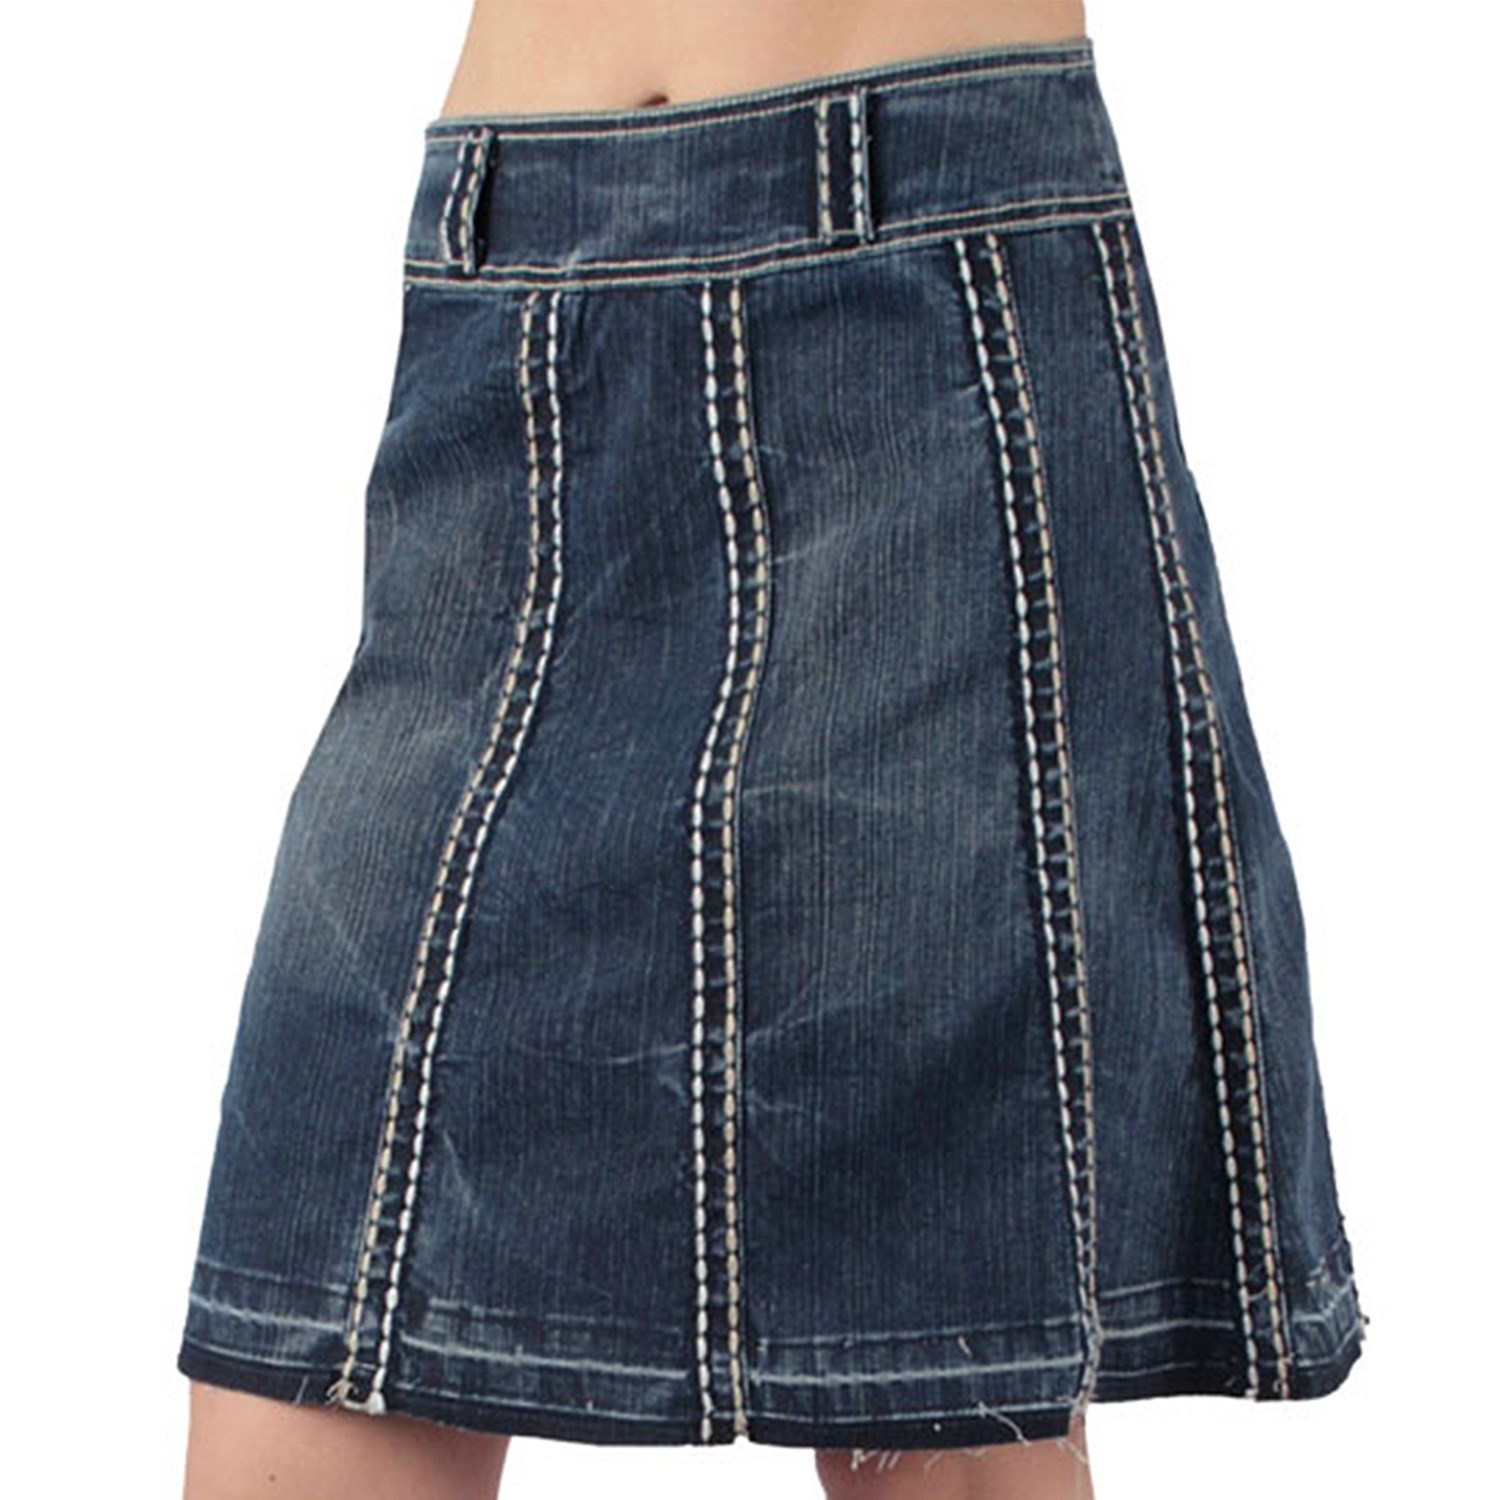 Ethyl Luggage Stitch Denim Skirt (For Women) 6589N - Save 51%